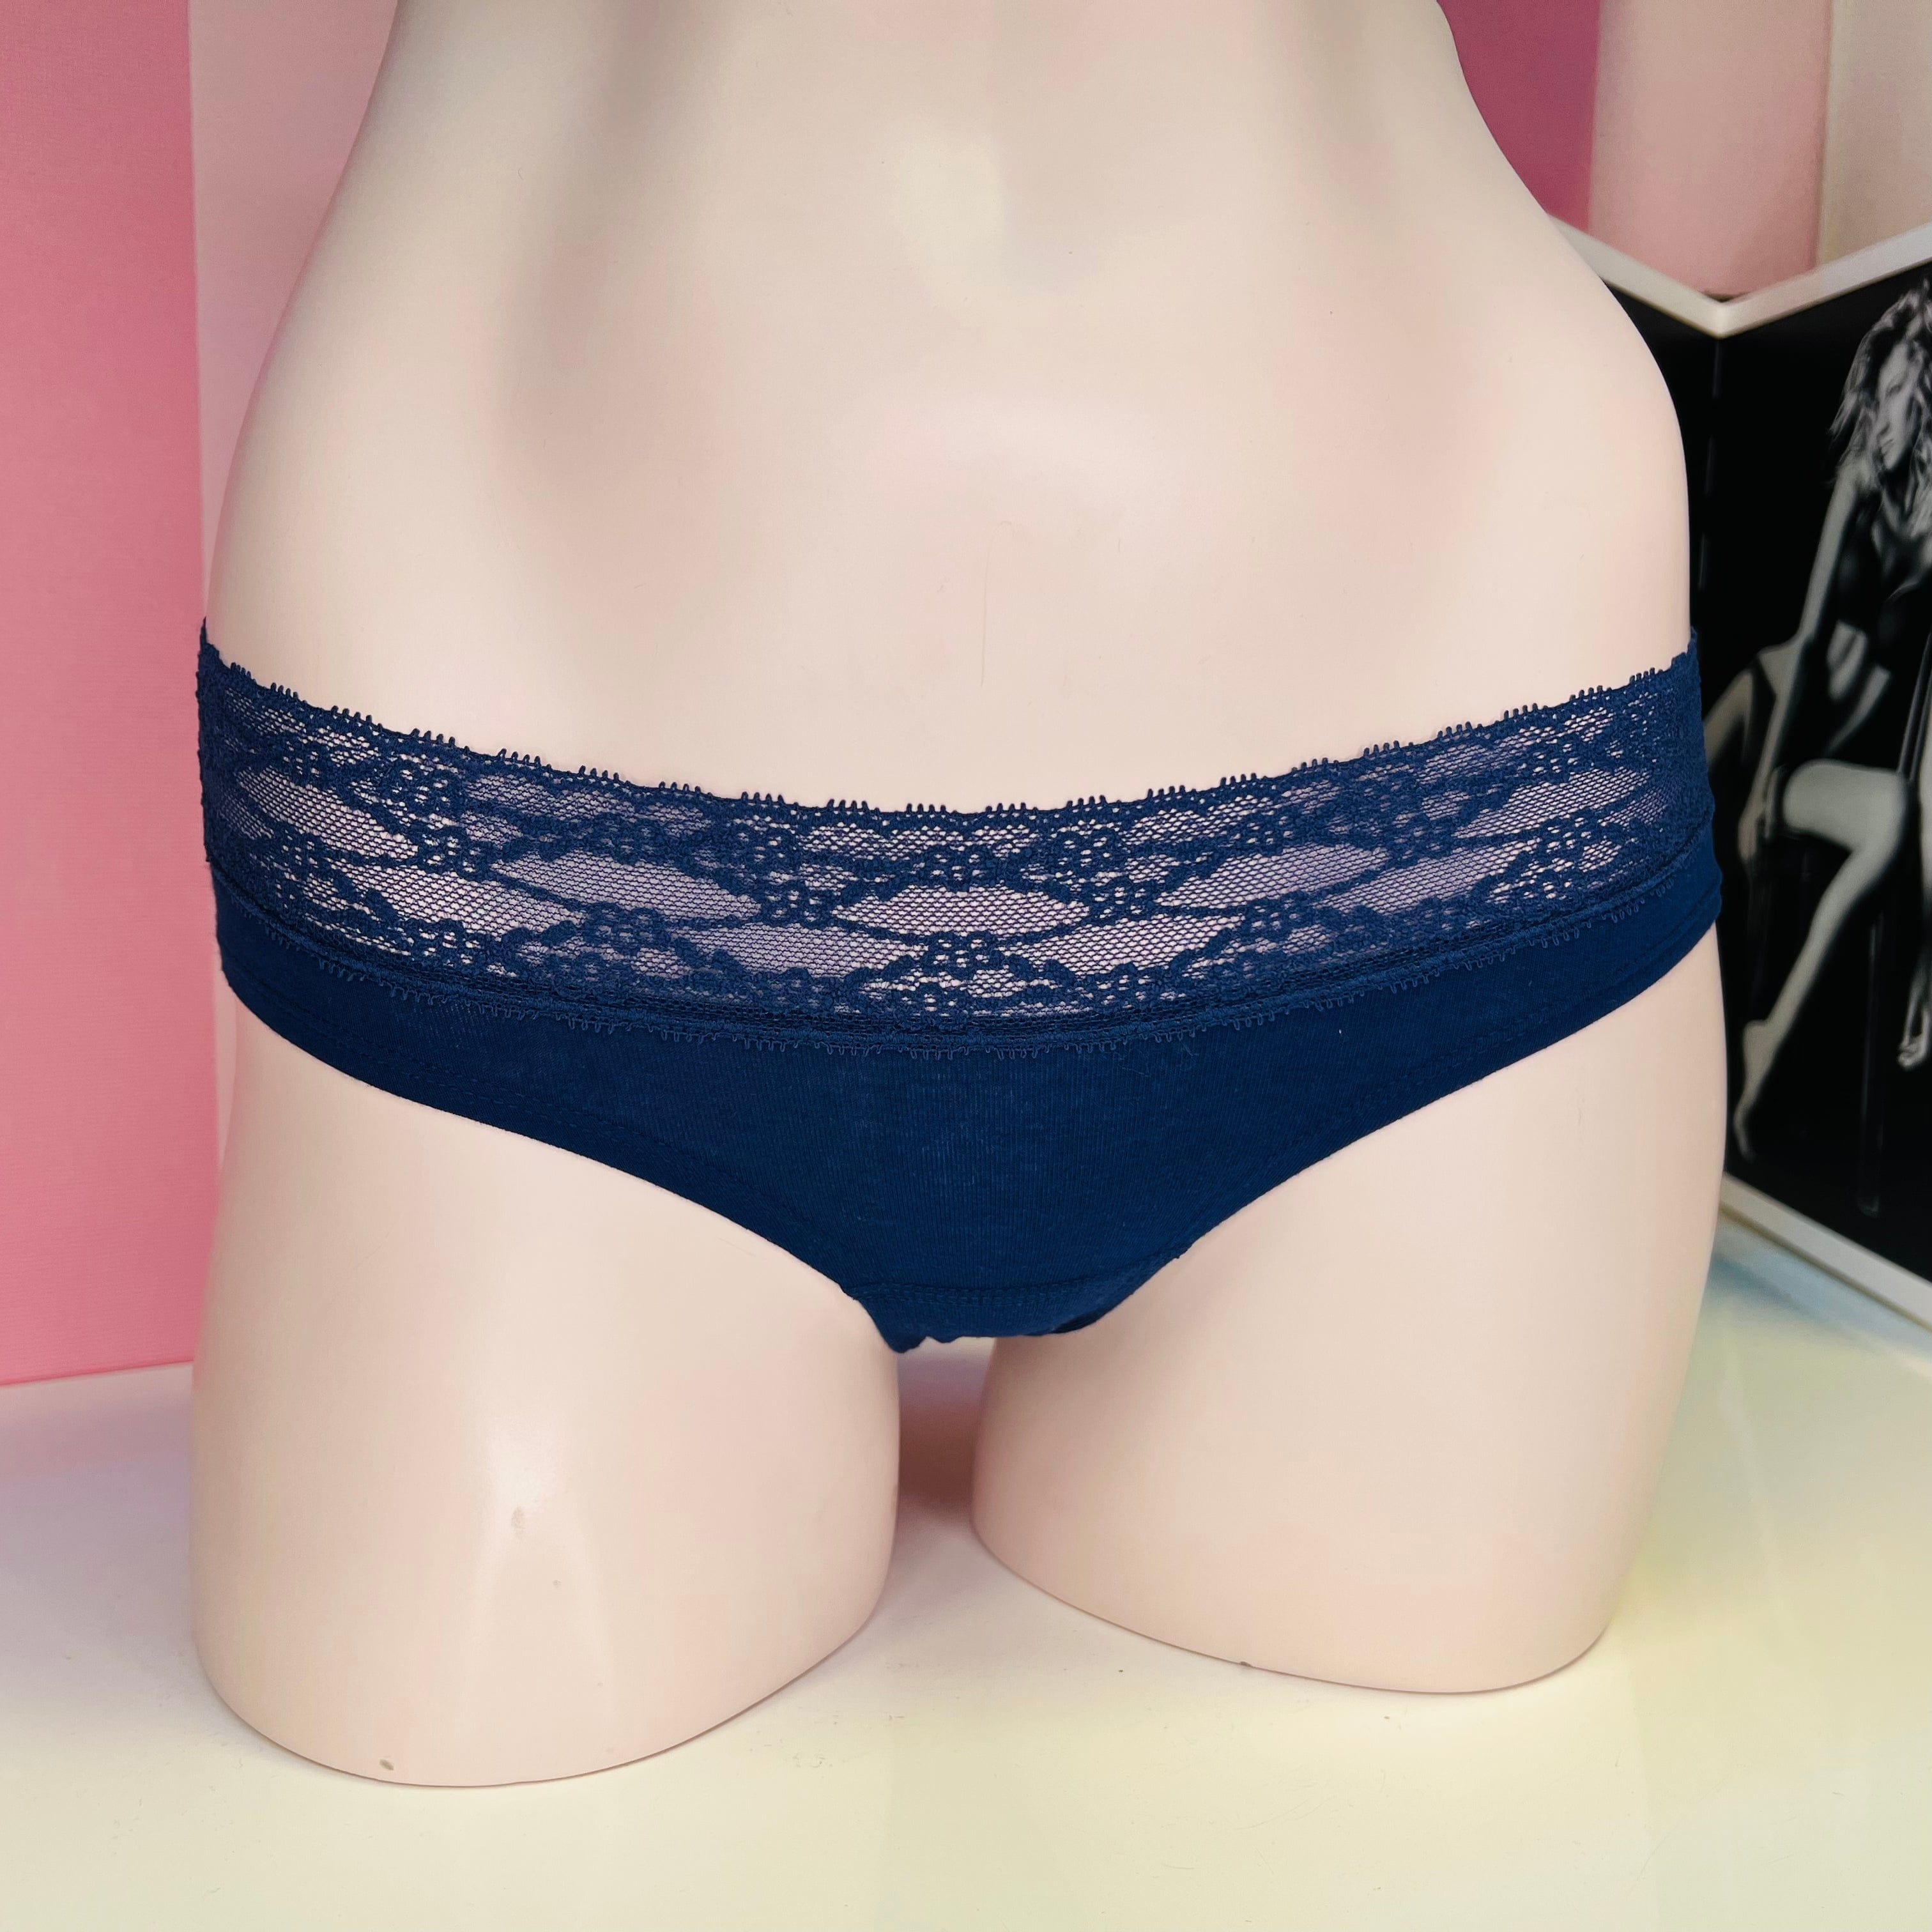 Kalhotky s jemnou krajkou - XS / Královská modř / Nové se štítky - Victoria’s Secret